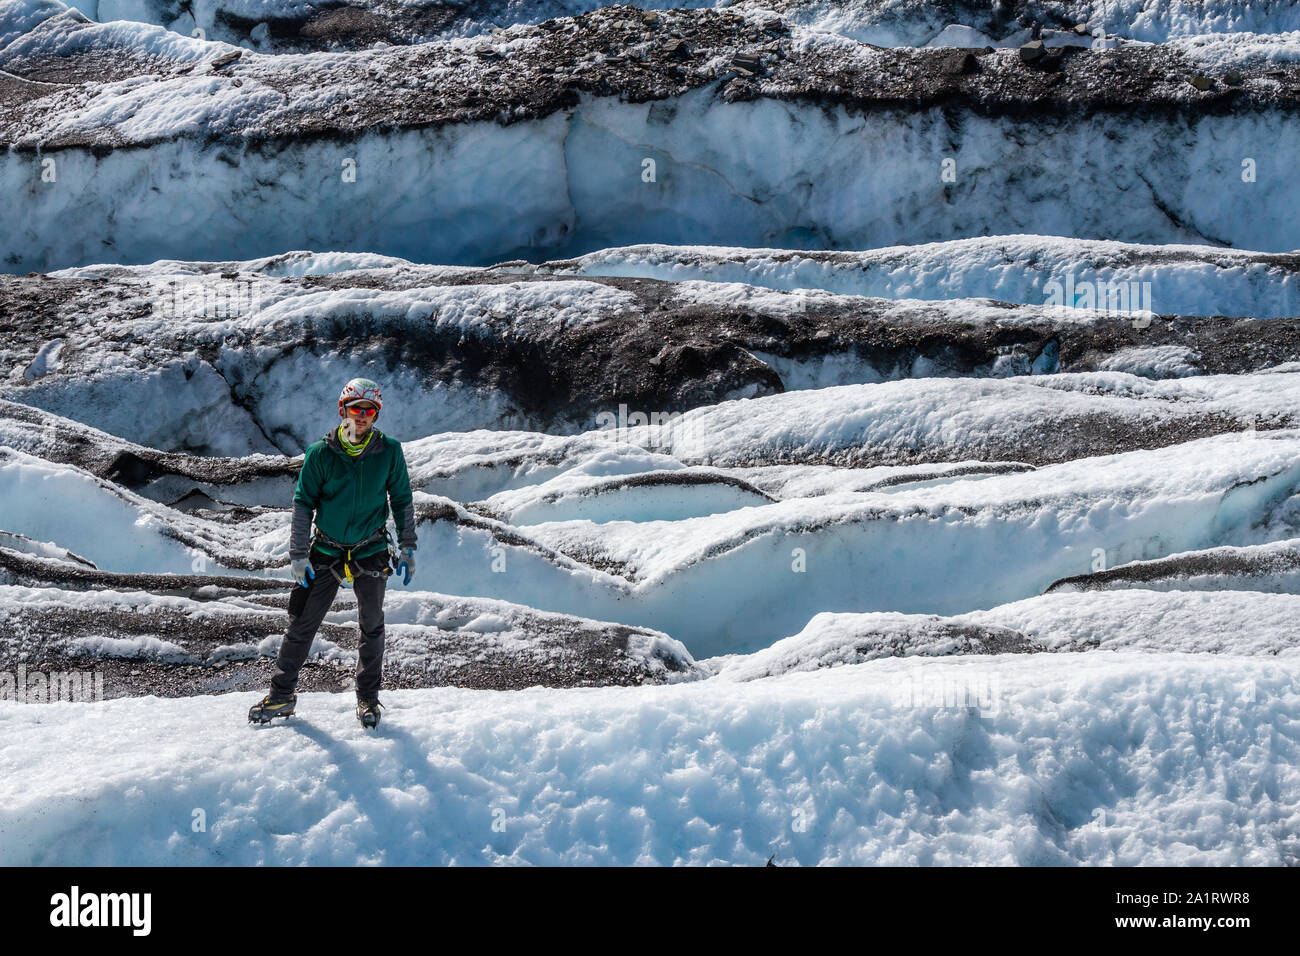 In einem Feld von Gletscherspalten, ein Mann steht auf einer Rippe des weißes Eis. Hinter ihm sind Reihen von gebrochenem Eis in Moräne abgedeckt - Schmutz und Rock. Stockfoto